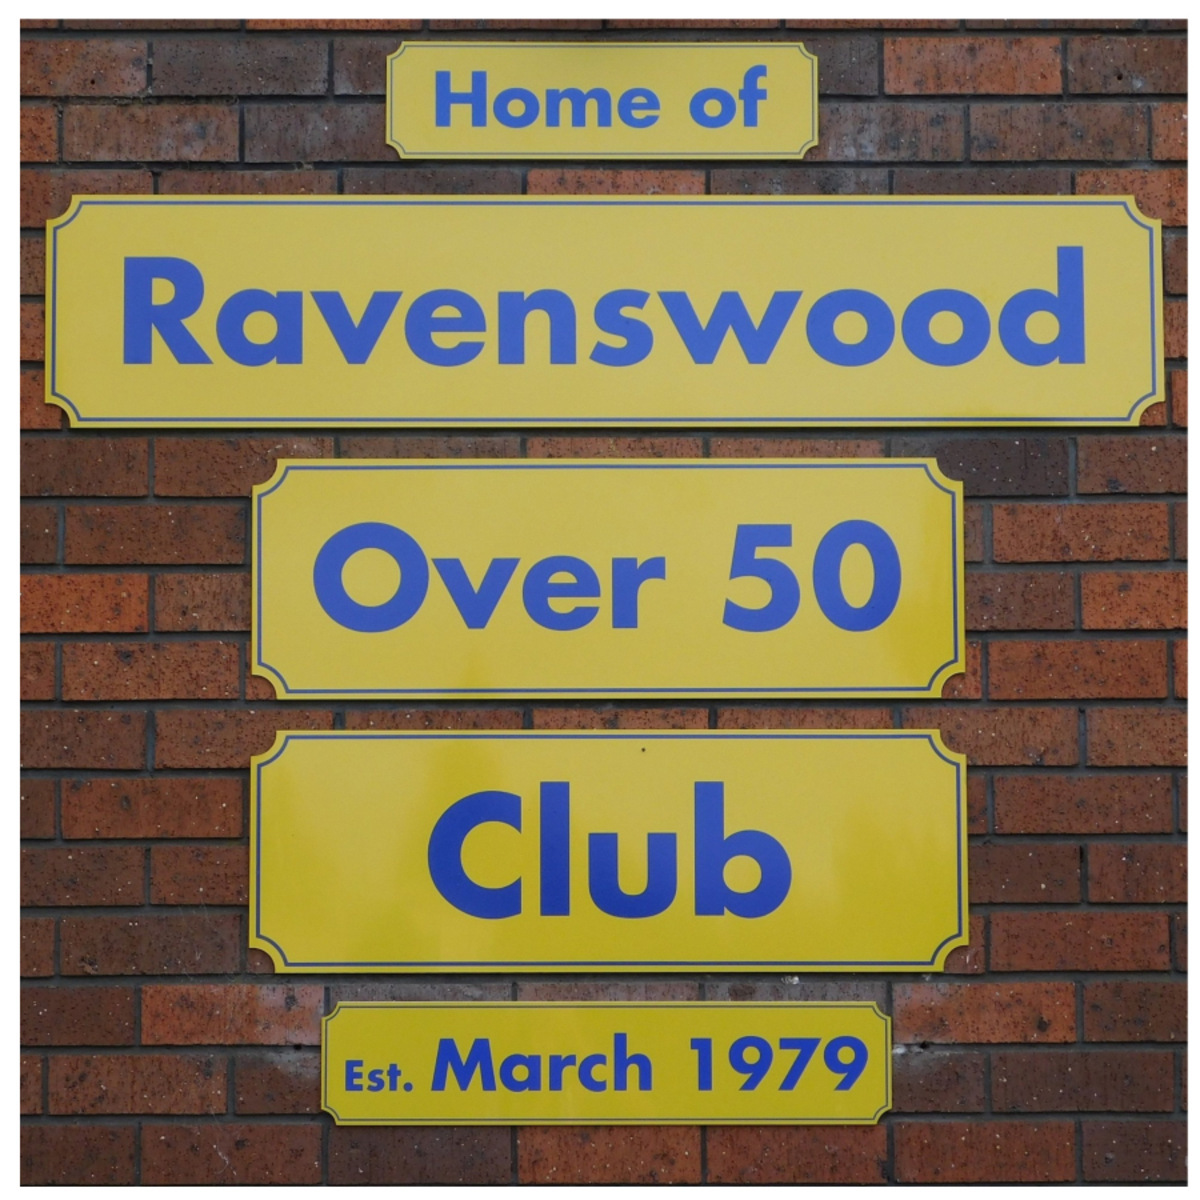 Ravenswood Rebels